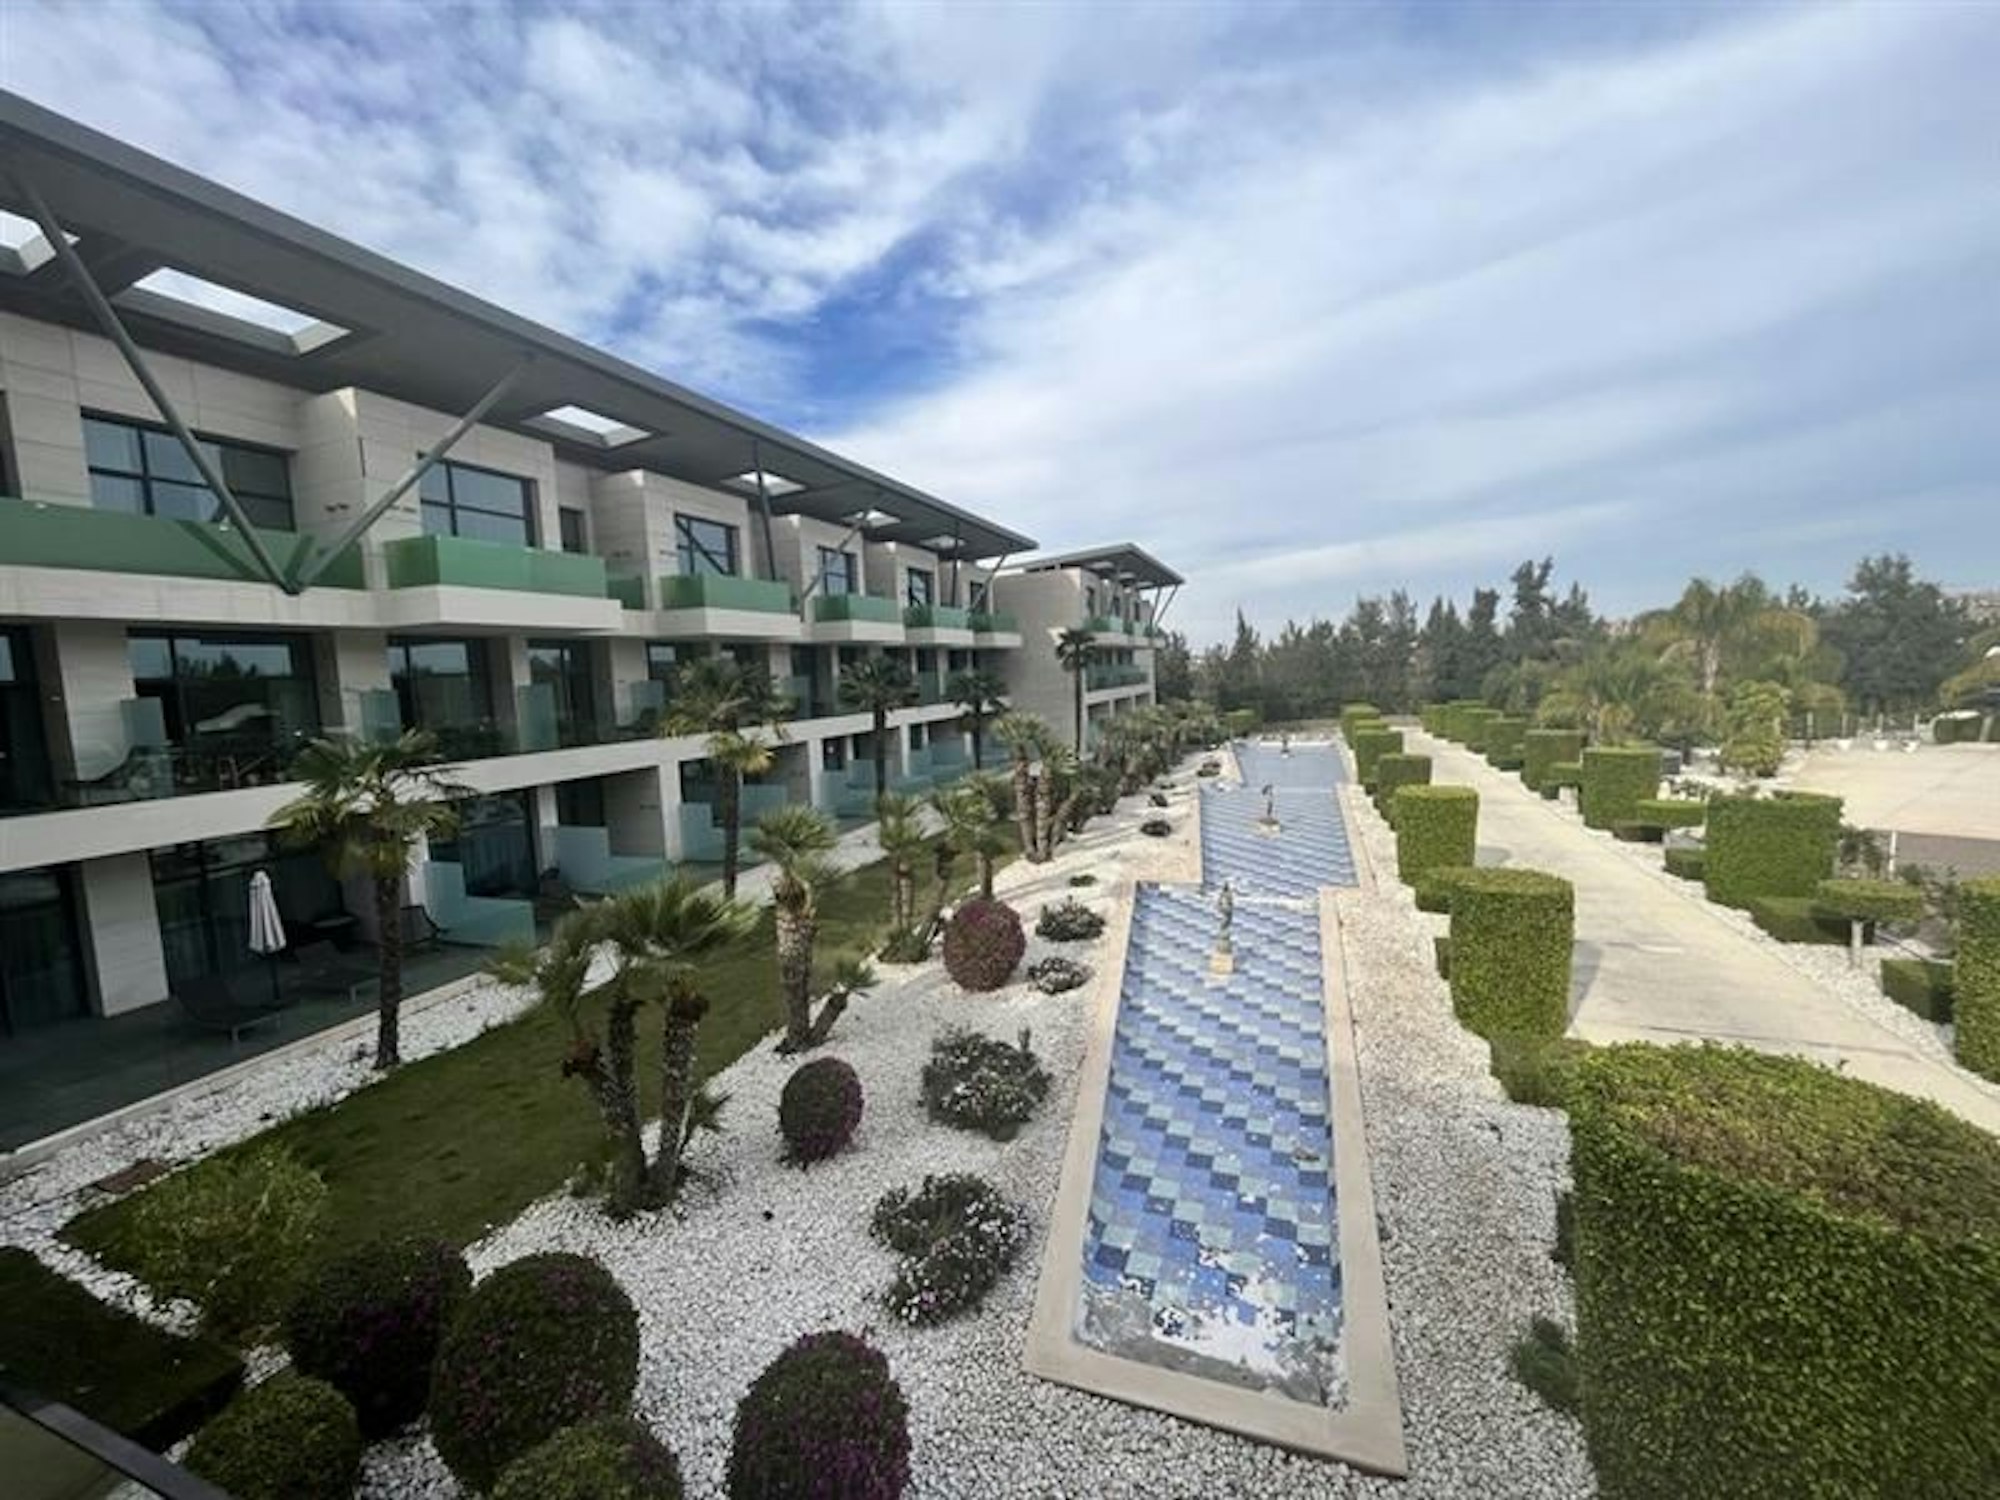 Blick auf die Hotelanlage von Innen. In der Mitte ein langes Wasserbecken. Links davon Palmen, rechts grüne Büsche.